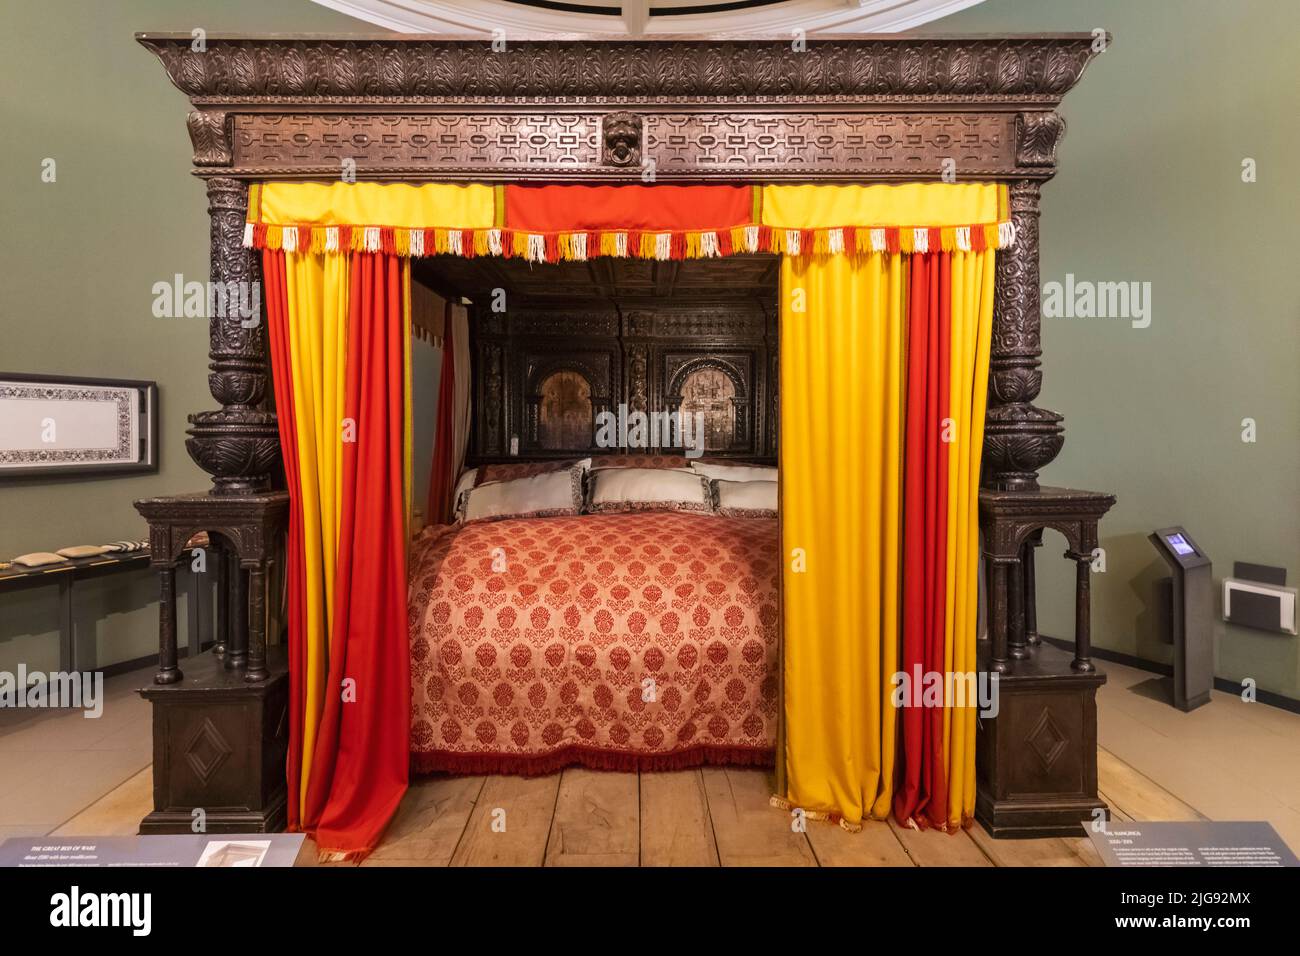 Inglaterra, Londres, Knightsbridge, el museo Victoria y Albert, la gran cama de Ware fecha 1590 Foto de stock